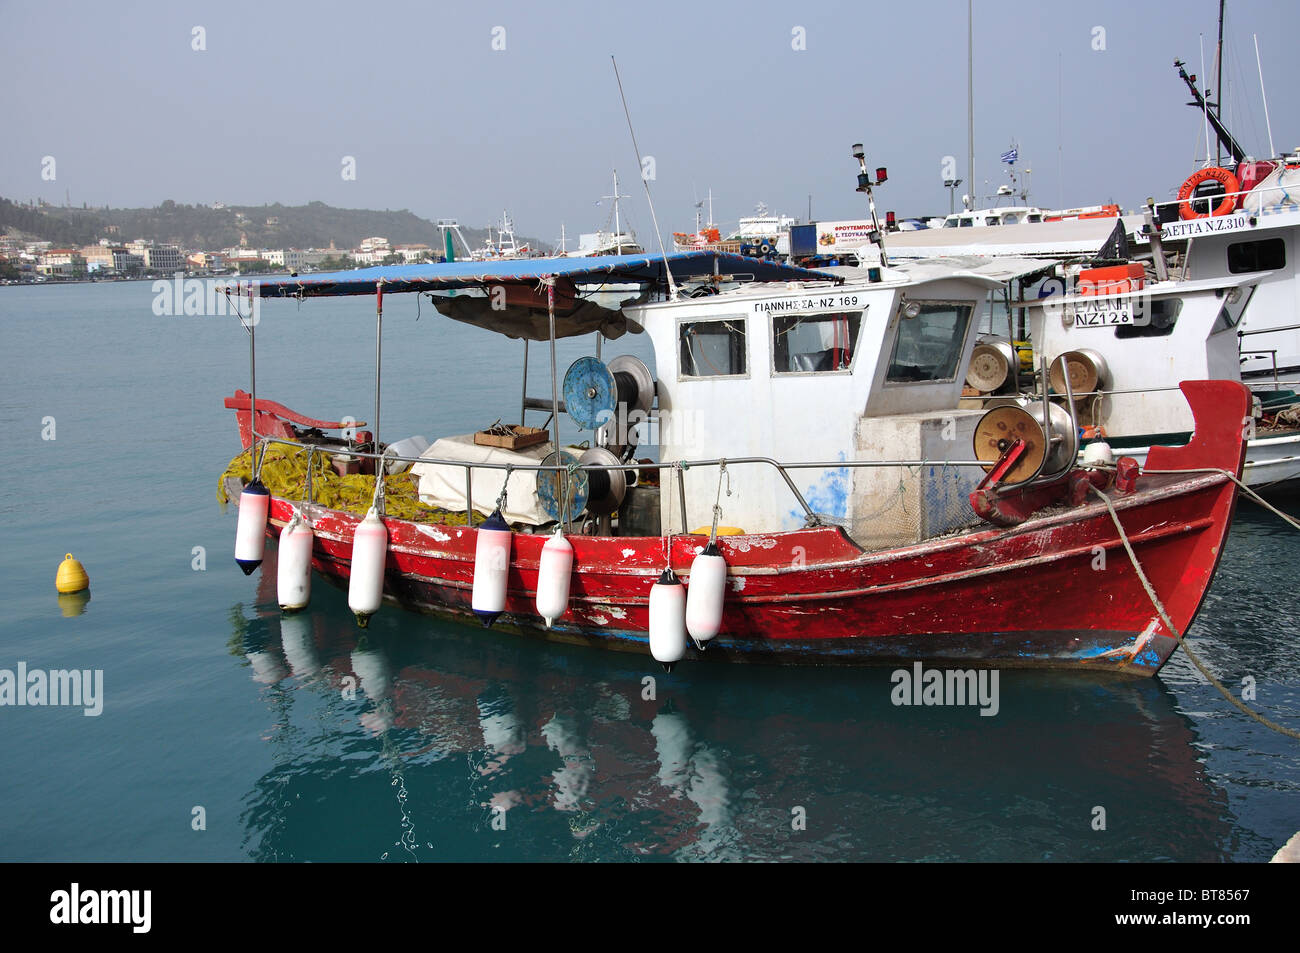 Bateau de pêche dans le port, la ville de Zakynthos, Zante, îles Ioniennes, Grèce Banque D'Images